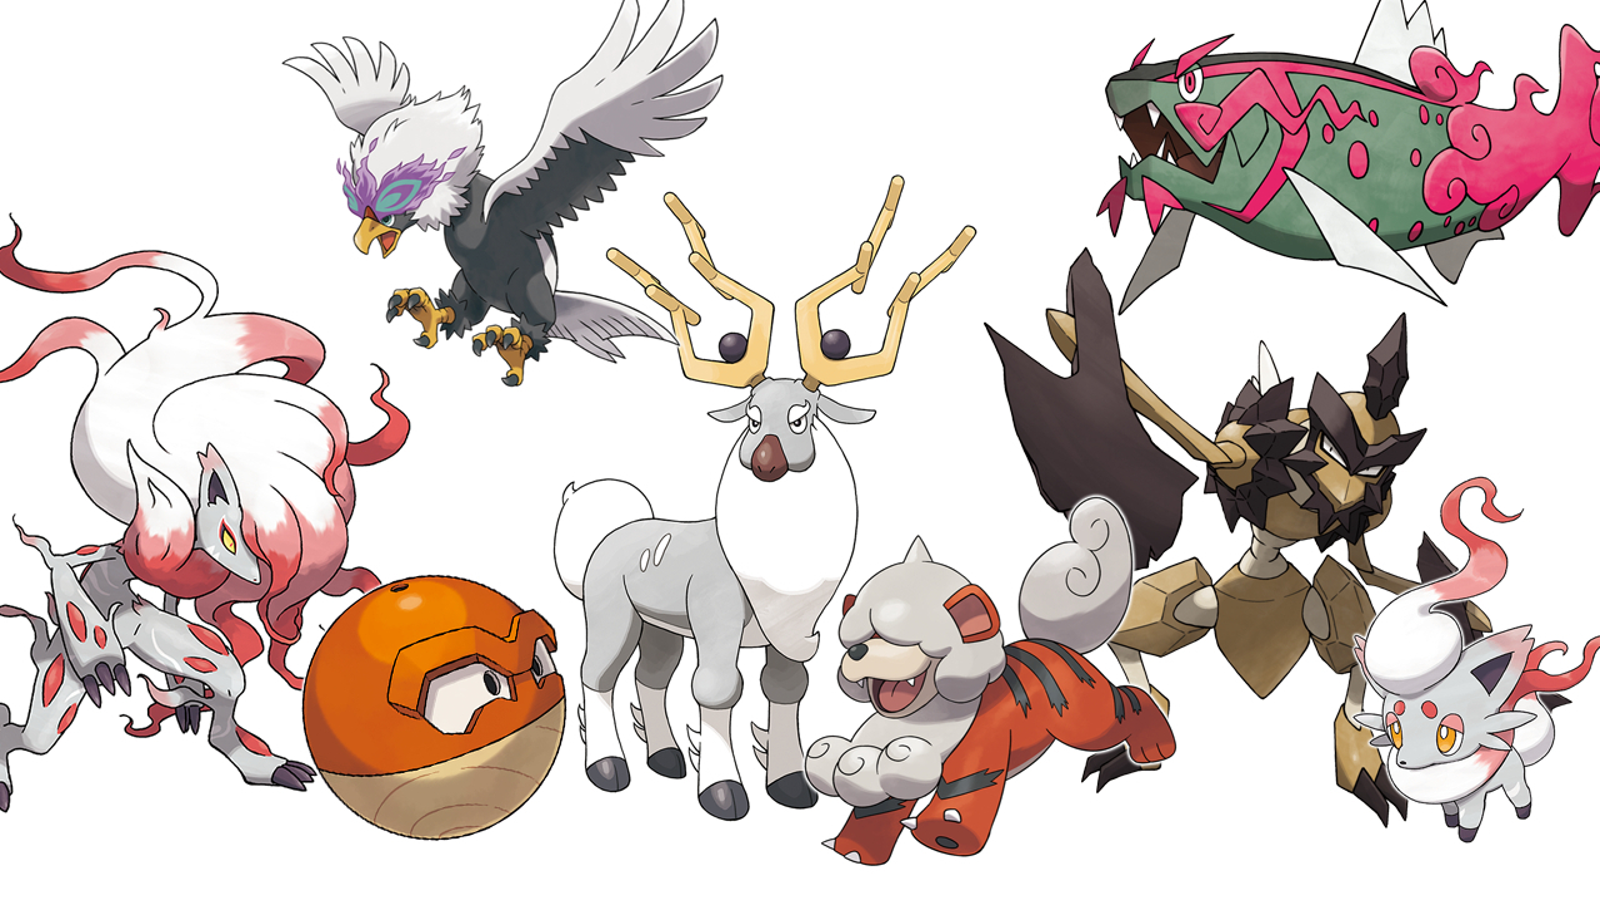 ◓ Pokémon LEGENDS Arceus: Conheça o novo jogo de Pokémon que será